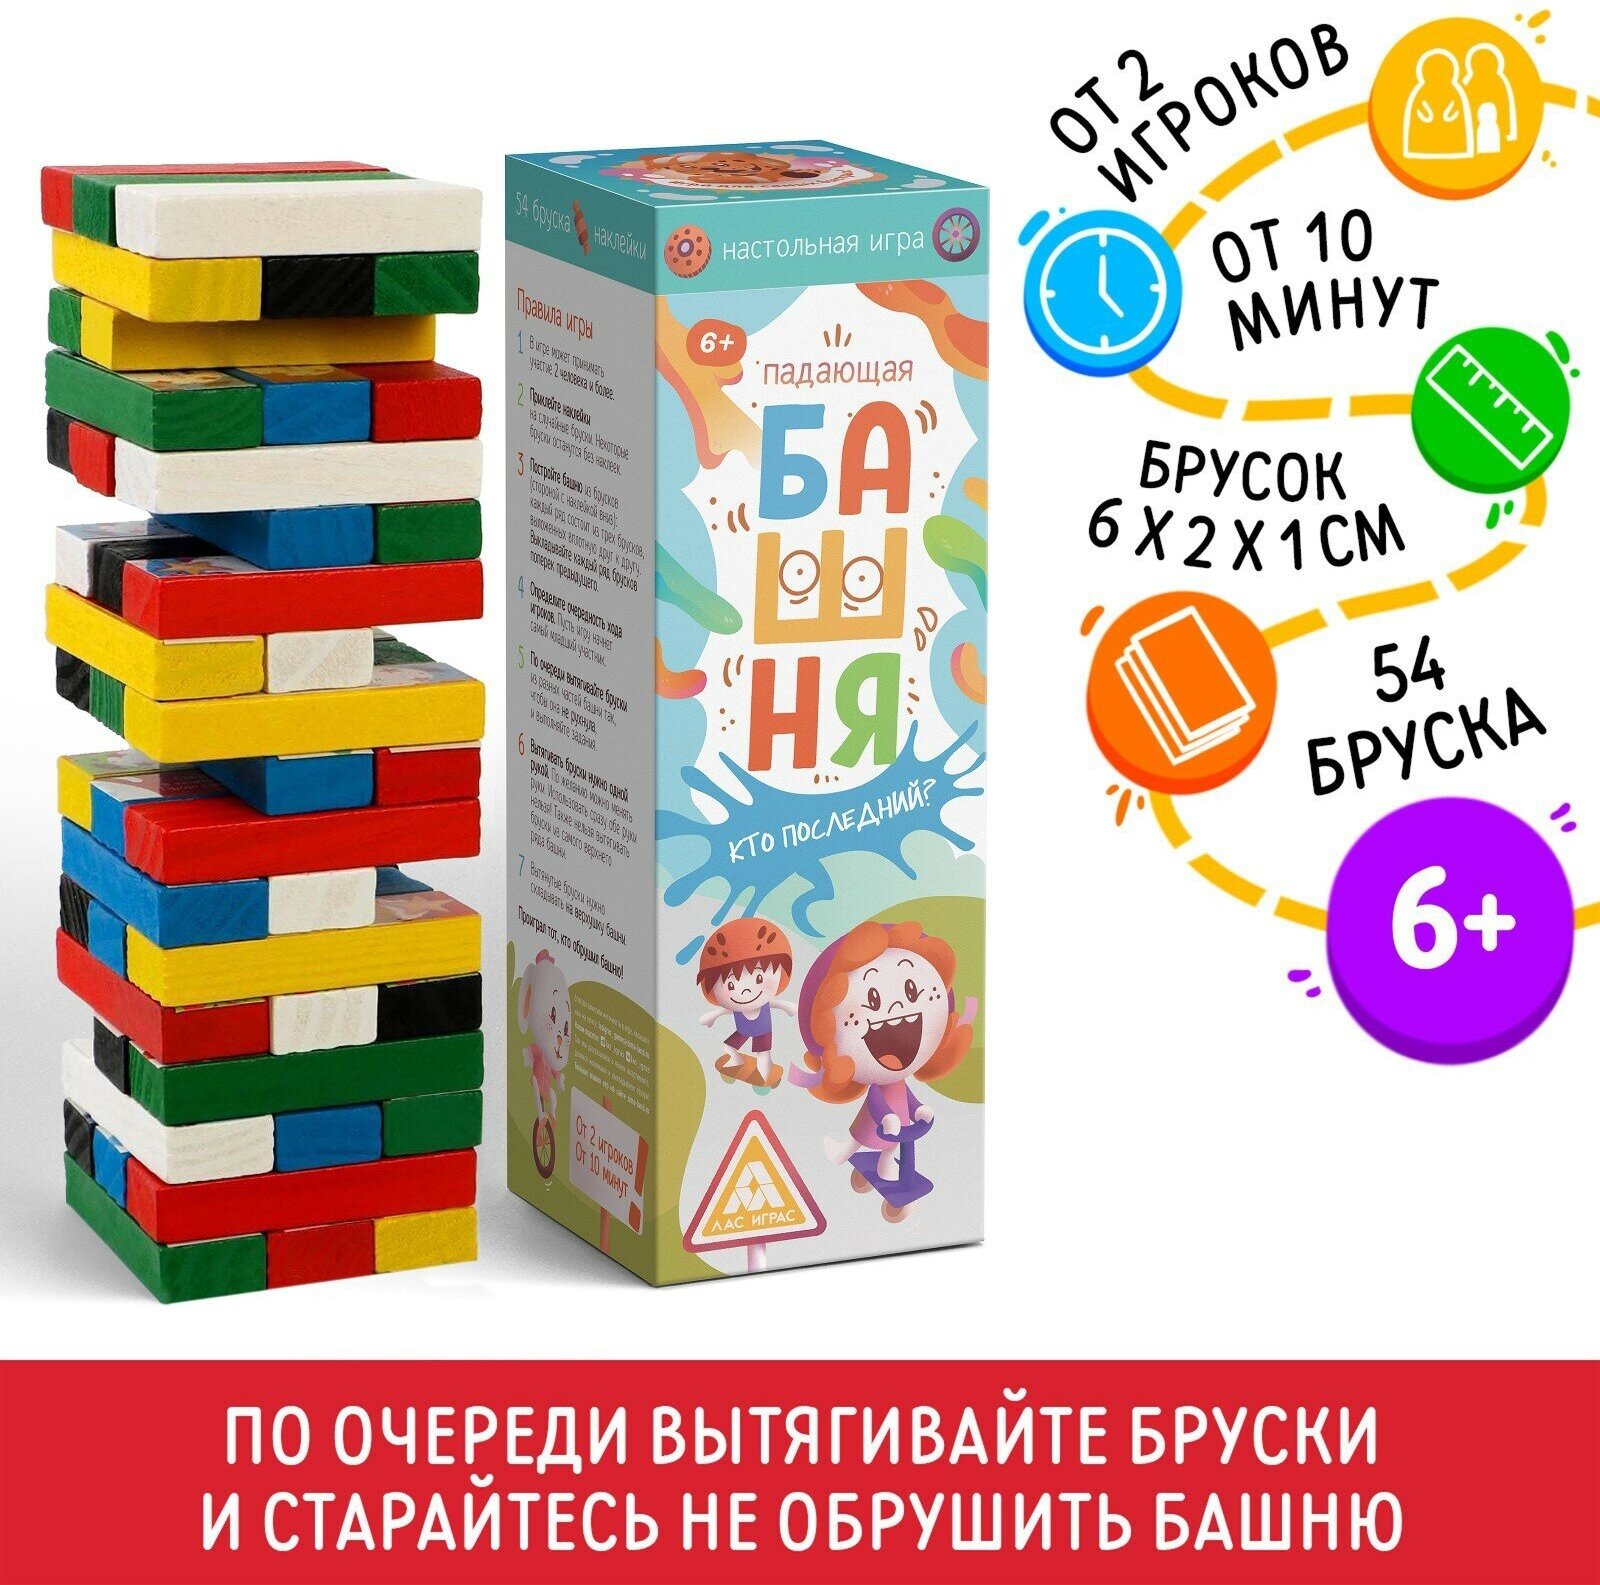 Настольная игра "Падающая башня Кто последний?" 54 бруска для детей и малышей от 6 лет